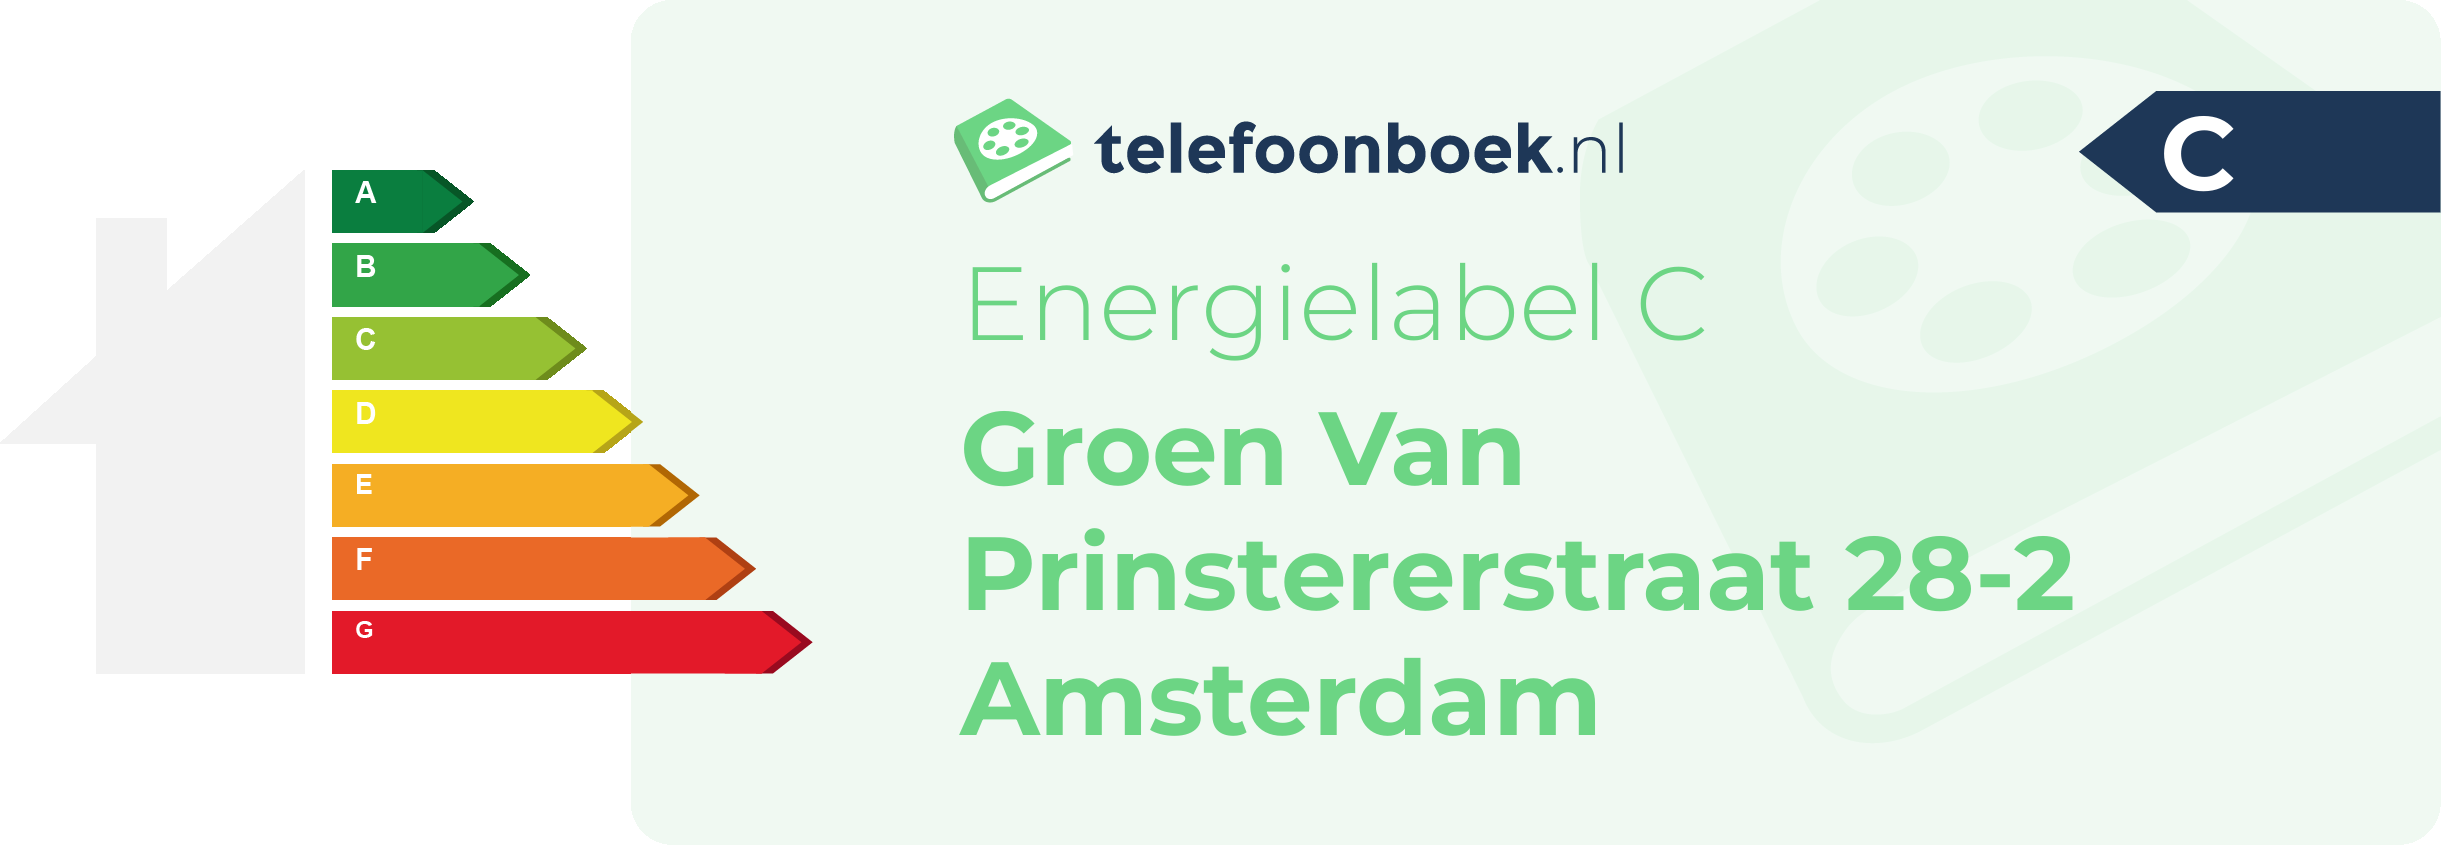 Energielabel Groen Van Prinstererstraat 28-2 Amsterdam